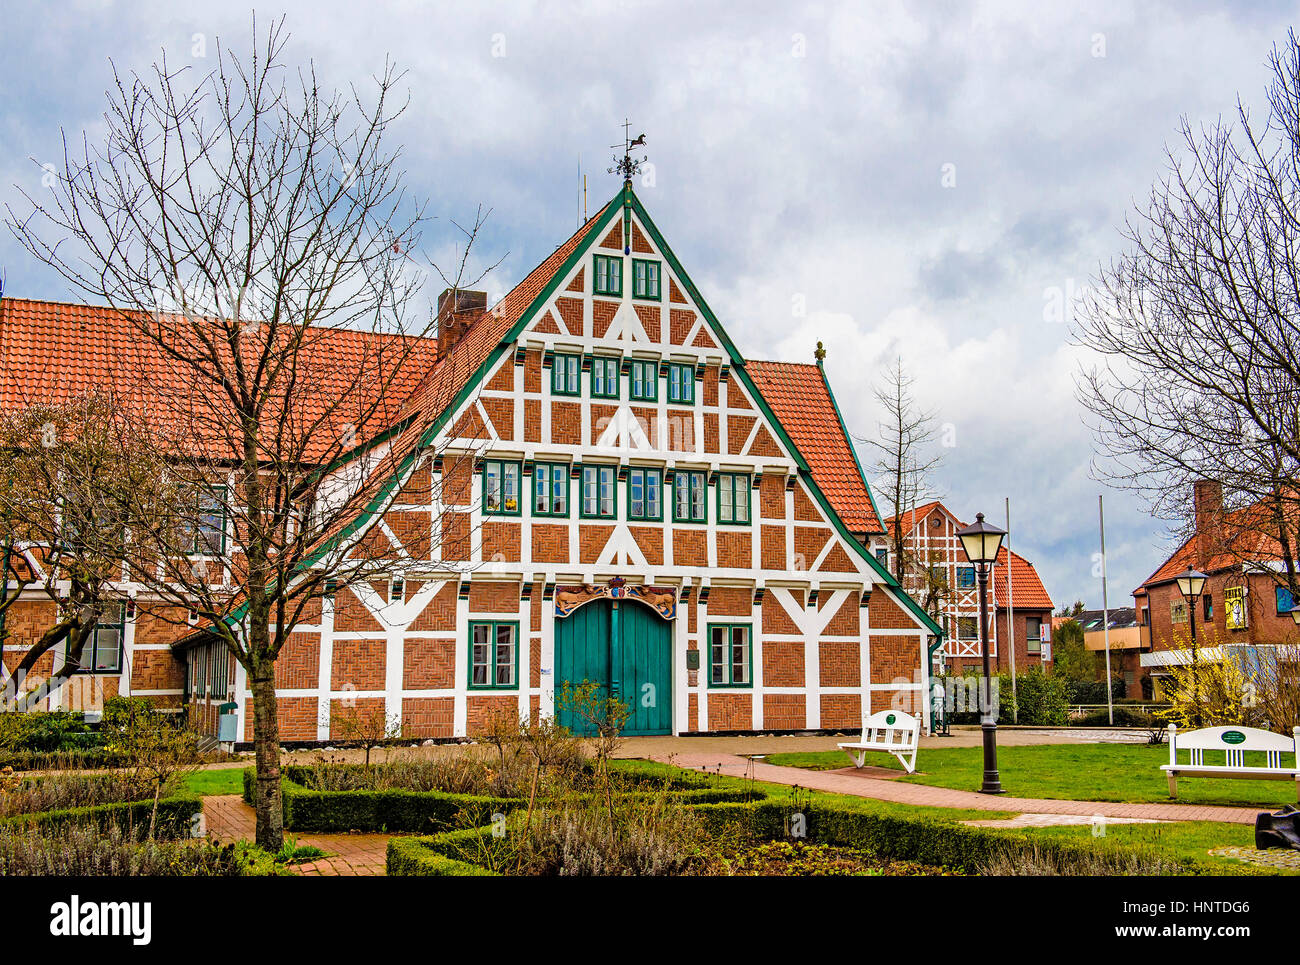 Häuser in Jork, Altes Land; Häuser in Jork, Niedersachsen Stockfoto